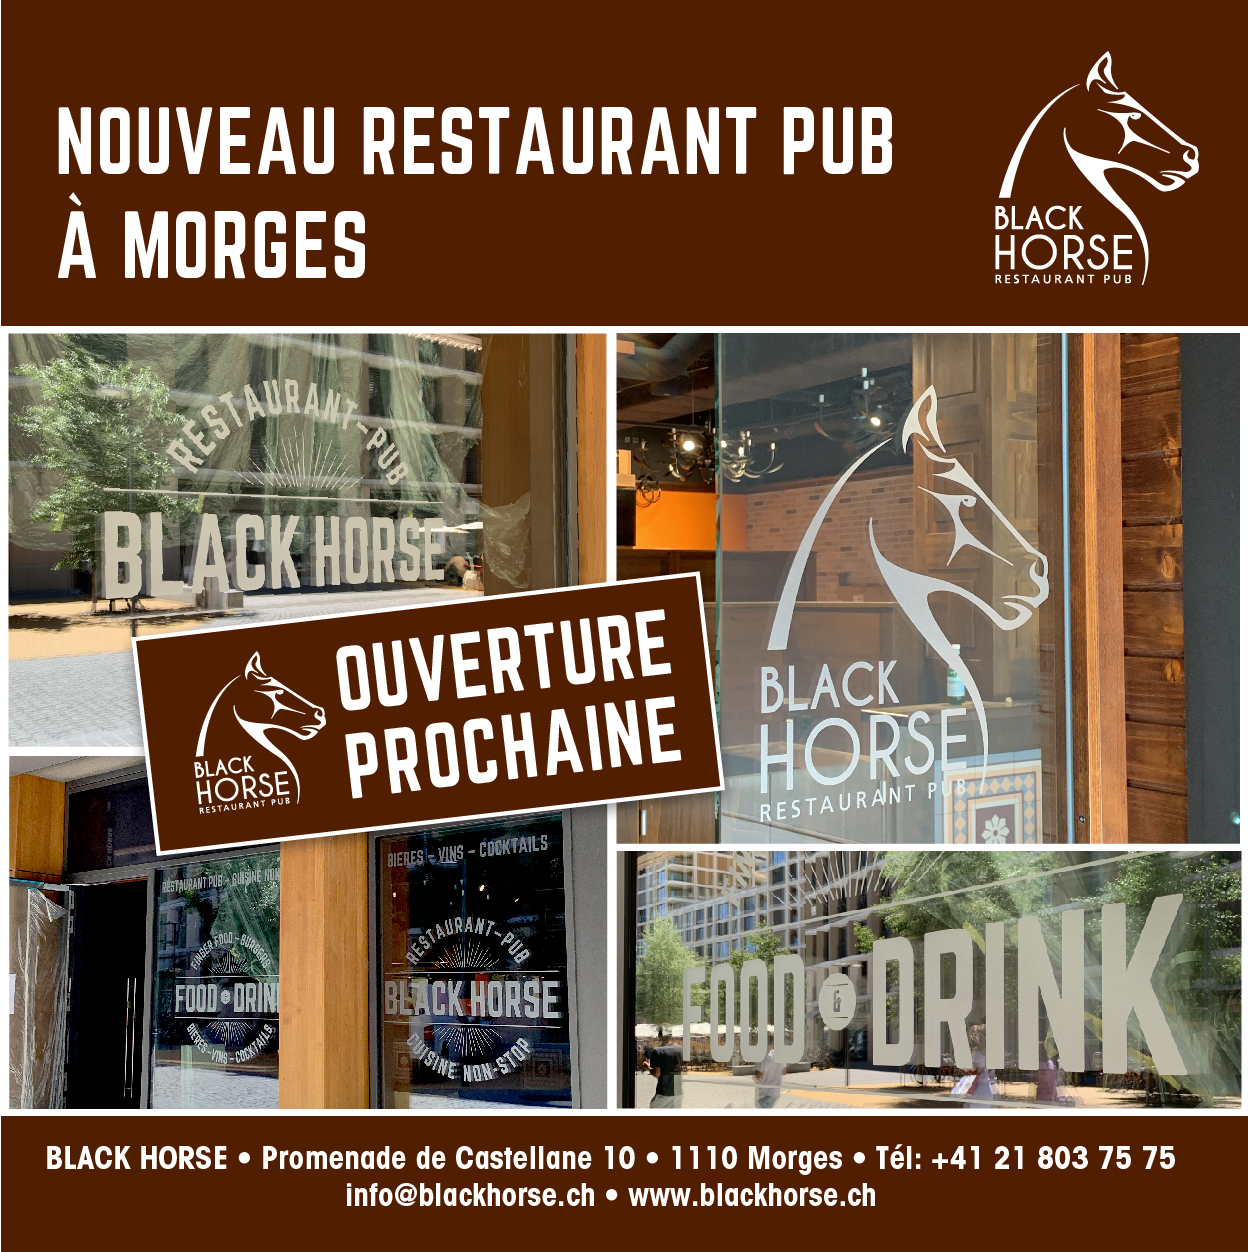 Blackhorse Restaurant Pub Morges Ouverture